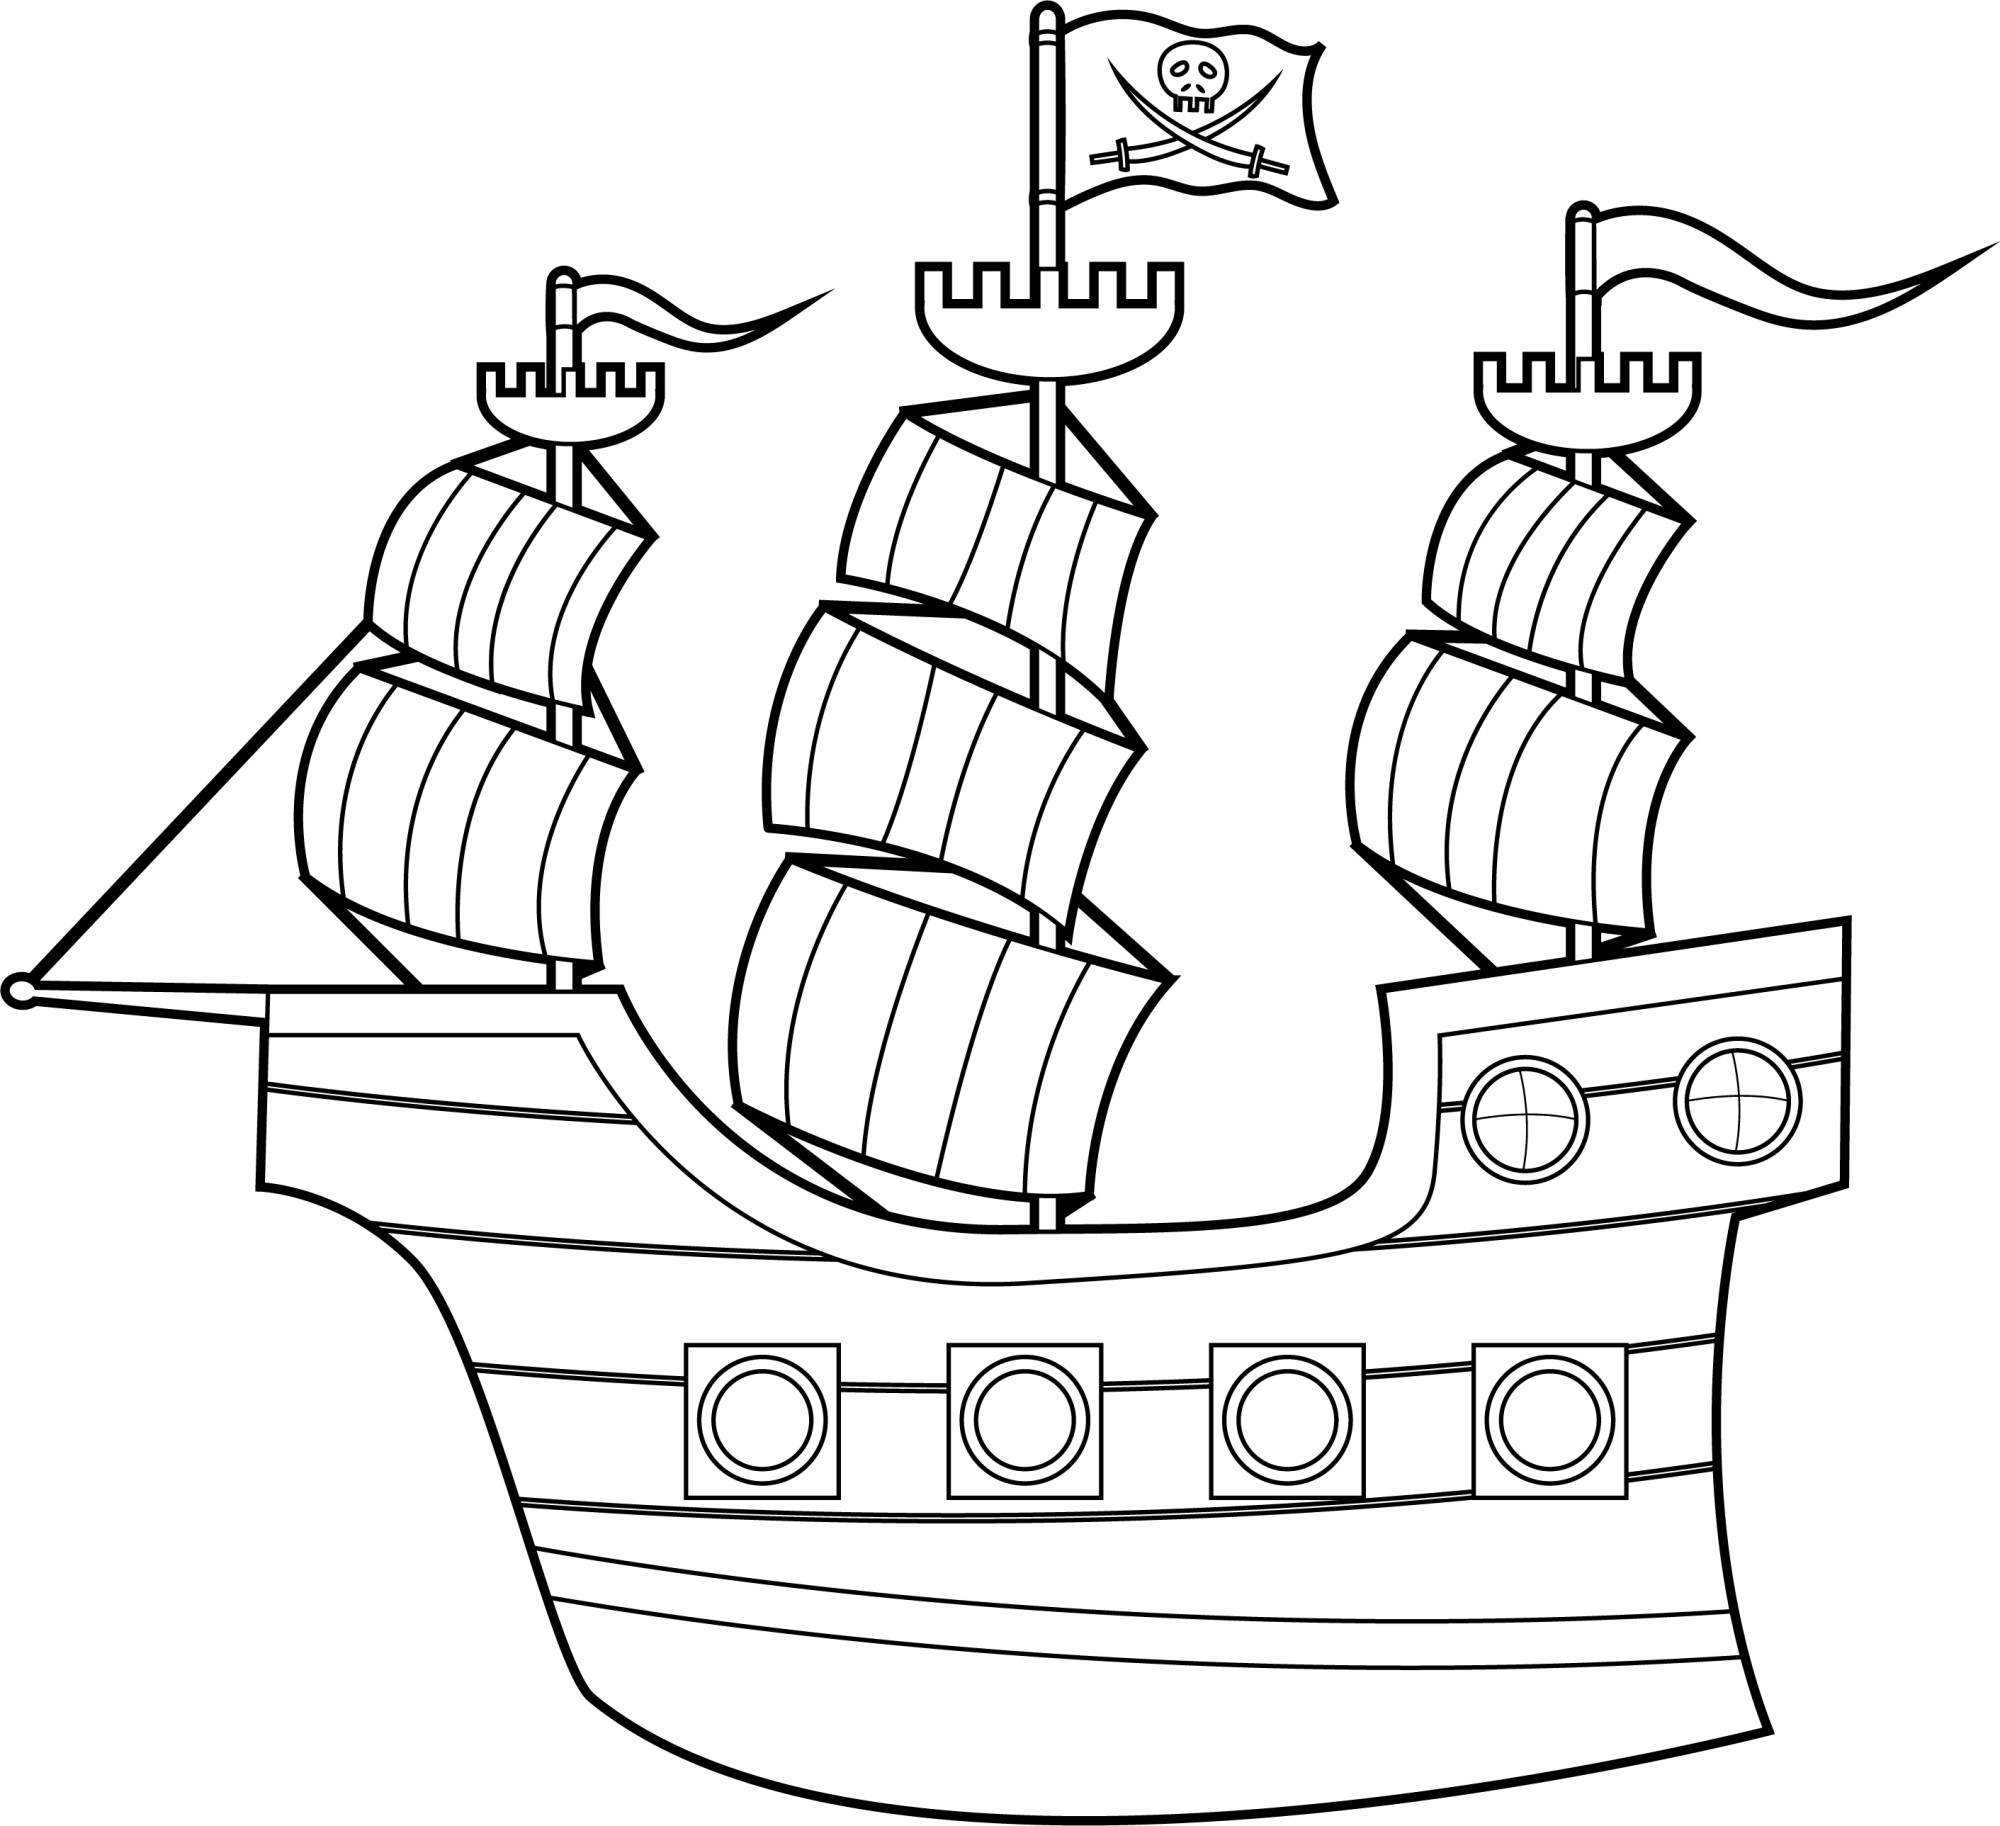 Раскраска для детей: пиратский корабль